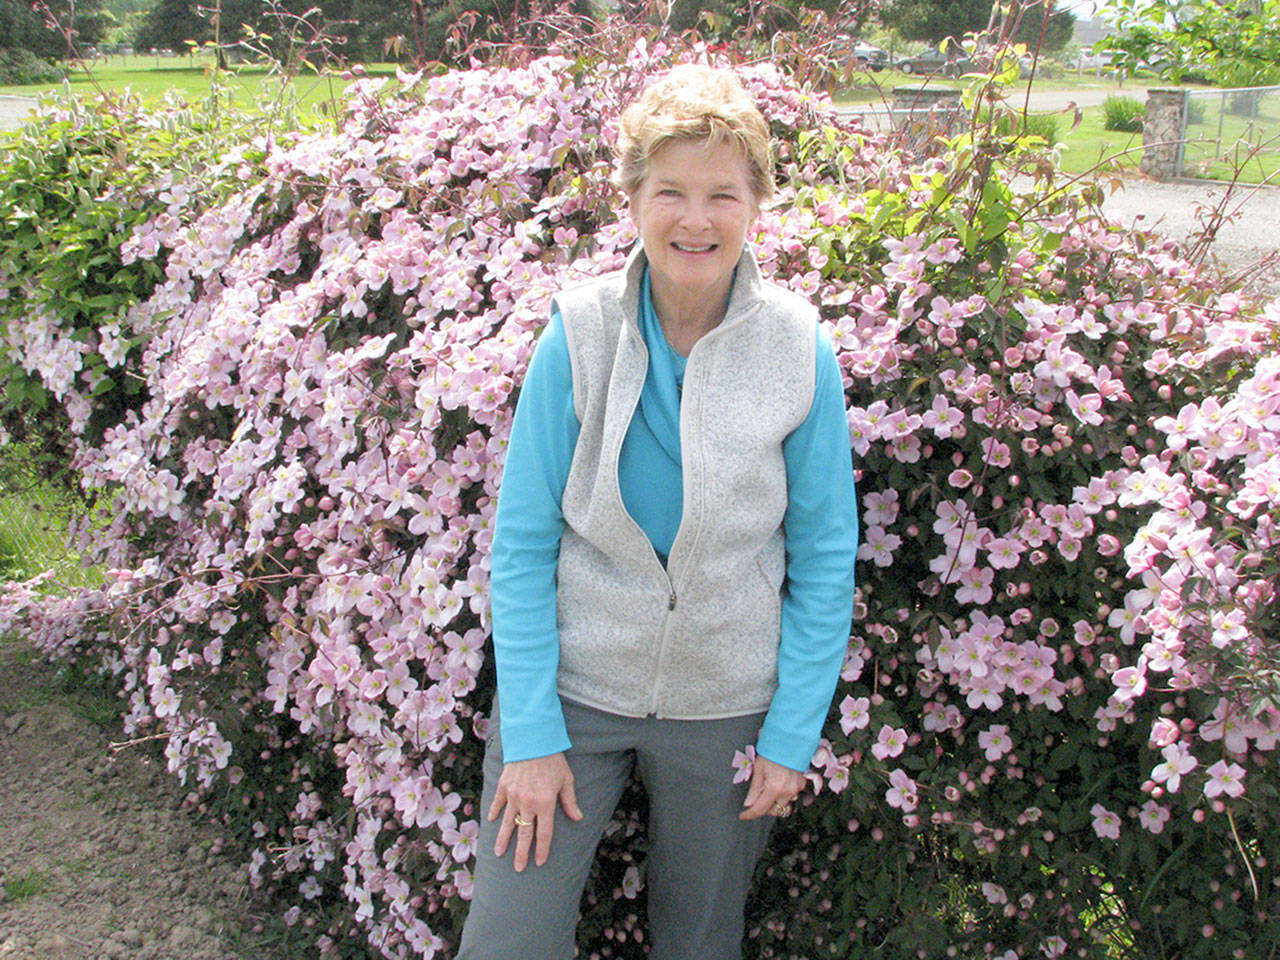 Master Gardener Elaine Webber will provide tips for drought-resistant gardens at upcoming talks in Port Angeles and Sequim. (Amanda Rosenberg)